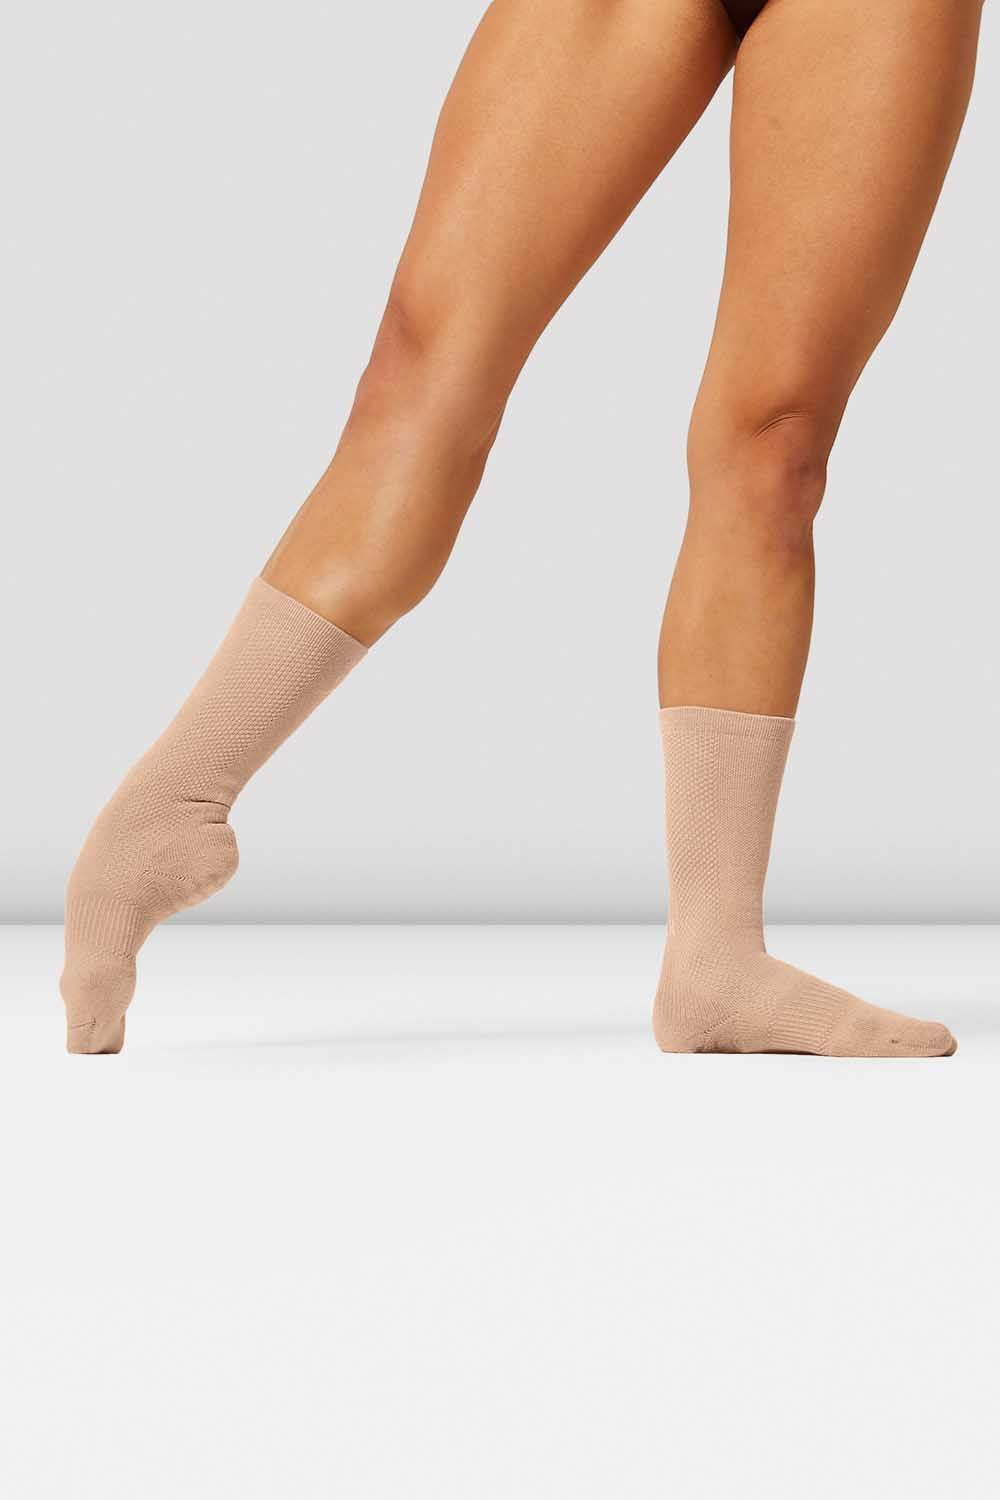 Body Wrappers Men's Dance Socks (M71)